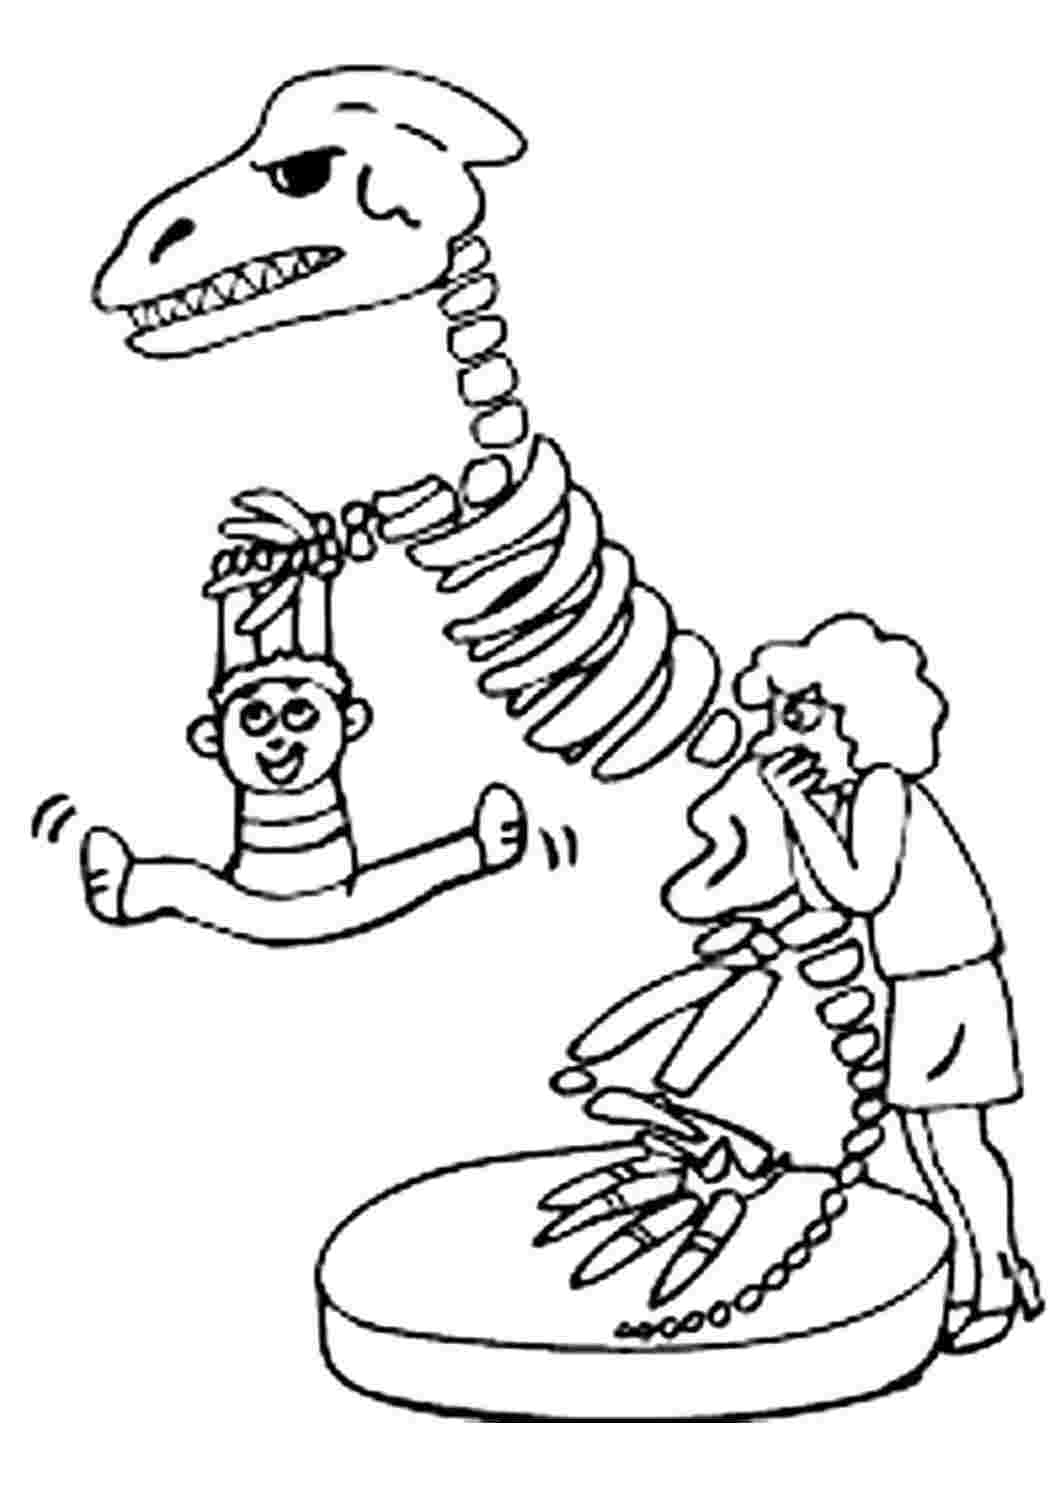 Скелет динозавра раскраска для детей